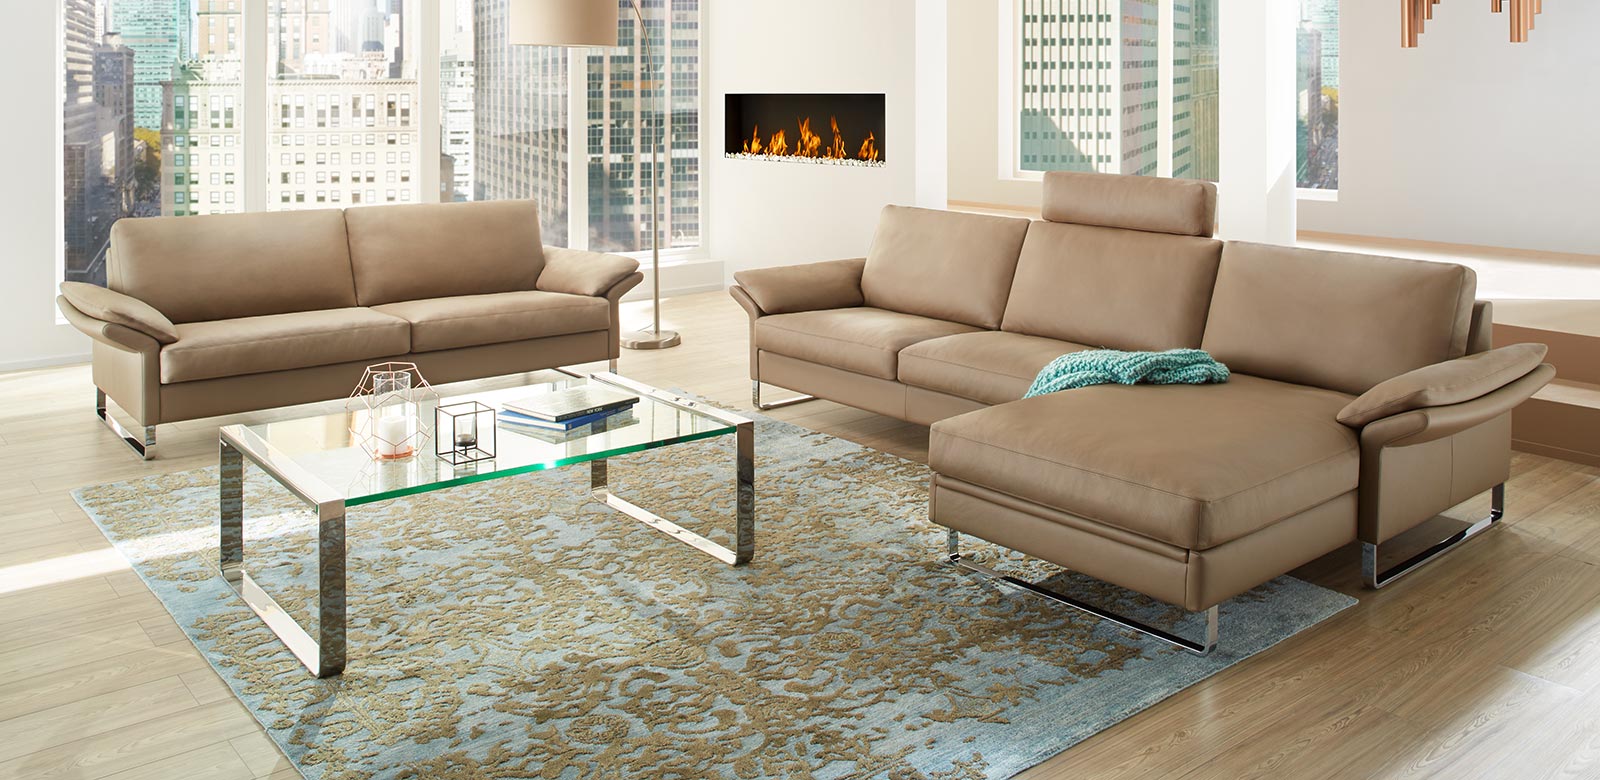 CL960 Sofa und Longchair-Kombination aus creme-farbenen Leder, verziehrter Teppich und Kamin im Wohnzimmer eines Hochhaus-Appartments